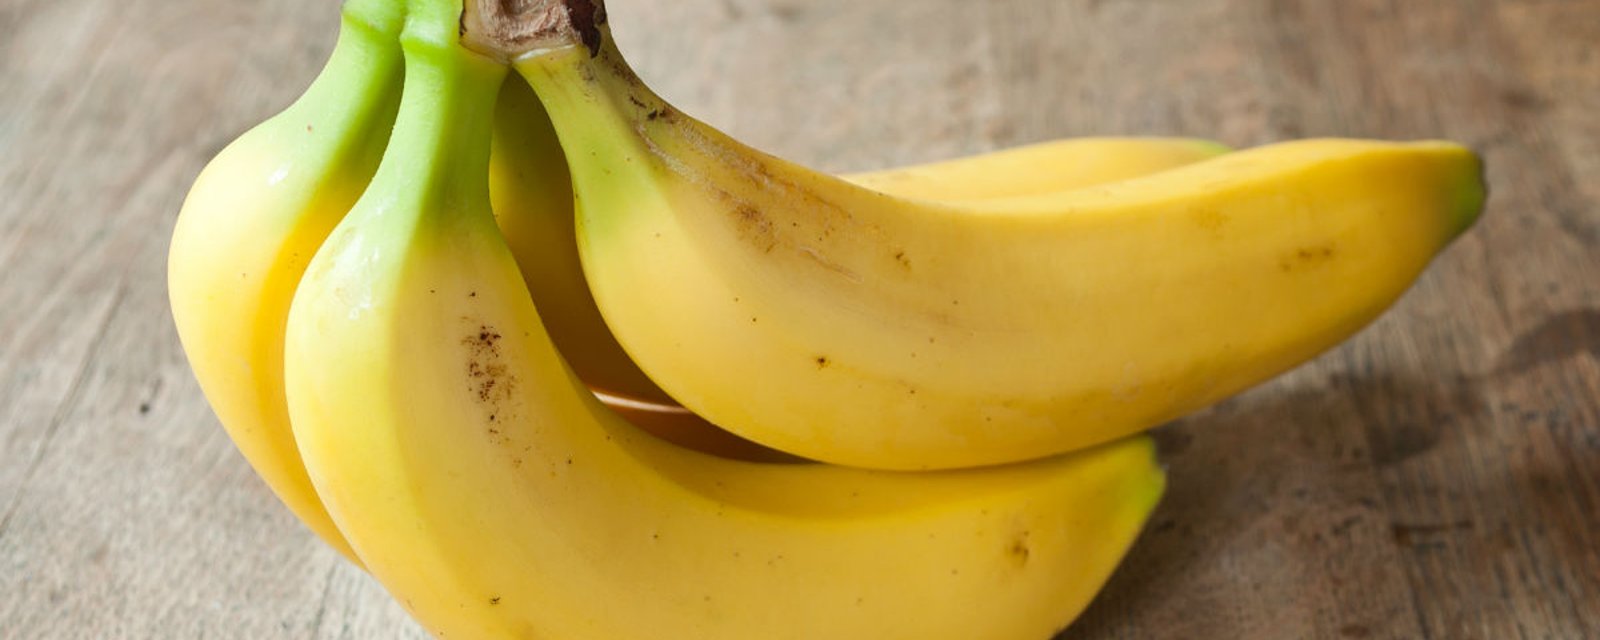 Elle utilise une méthode qui lui permet de conserver plus longtemps ses bananes et de les empêcher de noircir 